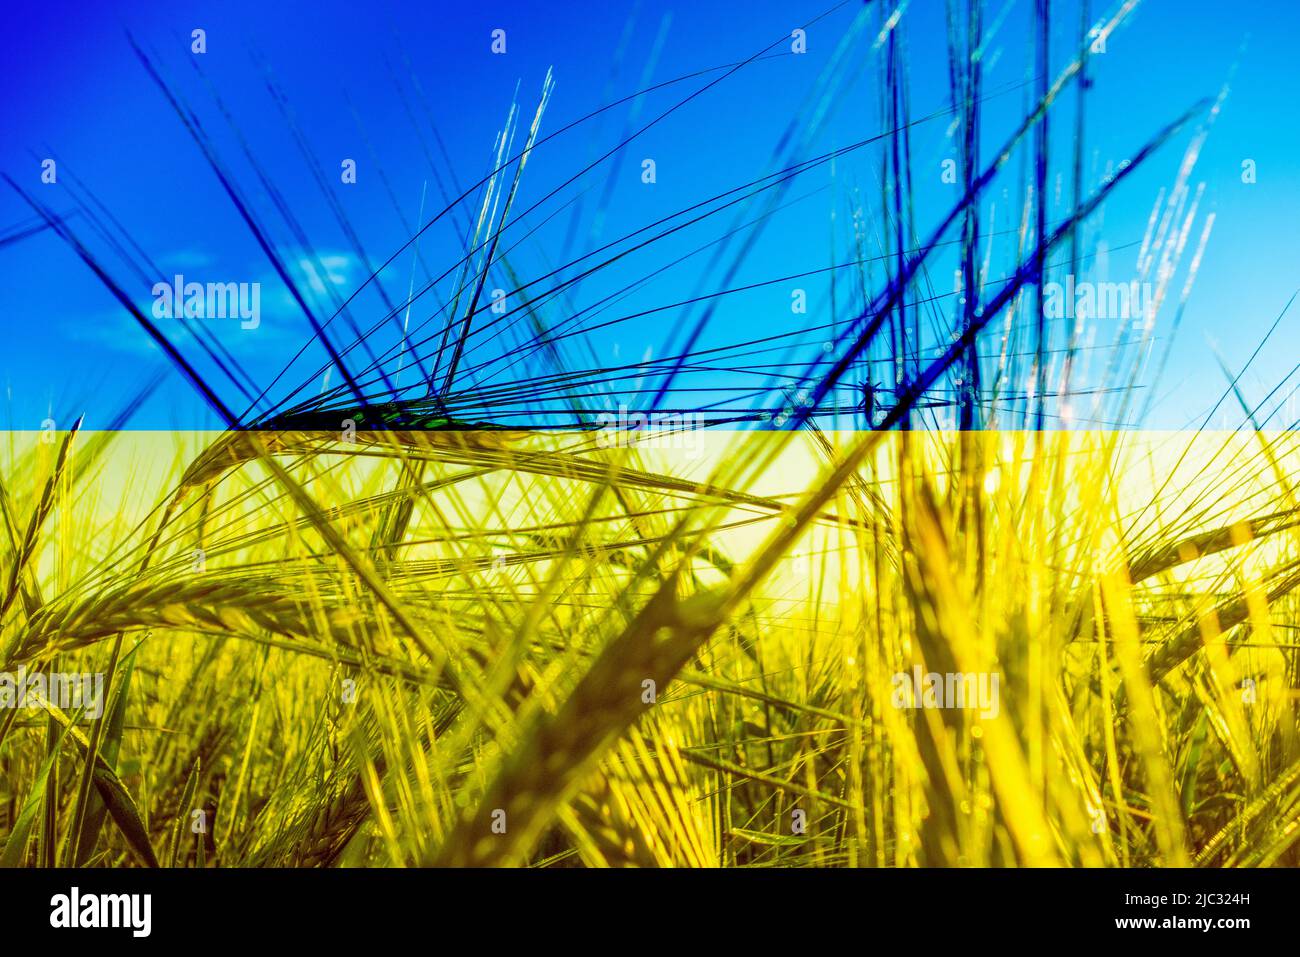 Bandera de Ucrania y compuesto de campo de trigo. Imagen conceptual: Ucrania Rusia Conflicto, guerra, trigo, escasez mundial de alimentos, sanciones rusas... Foto de stock